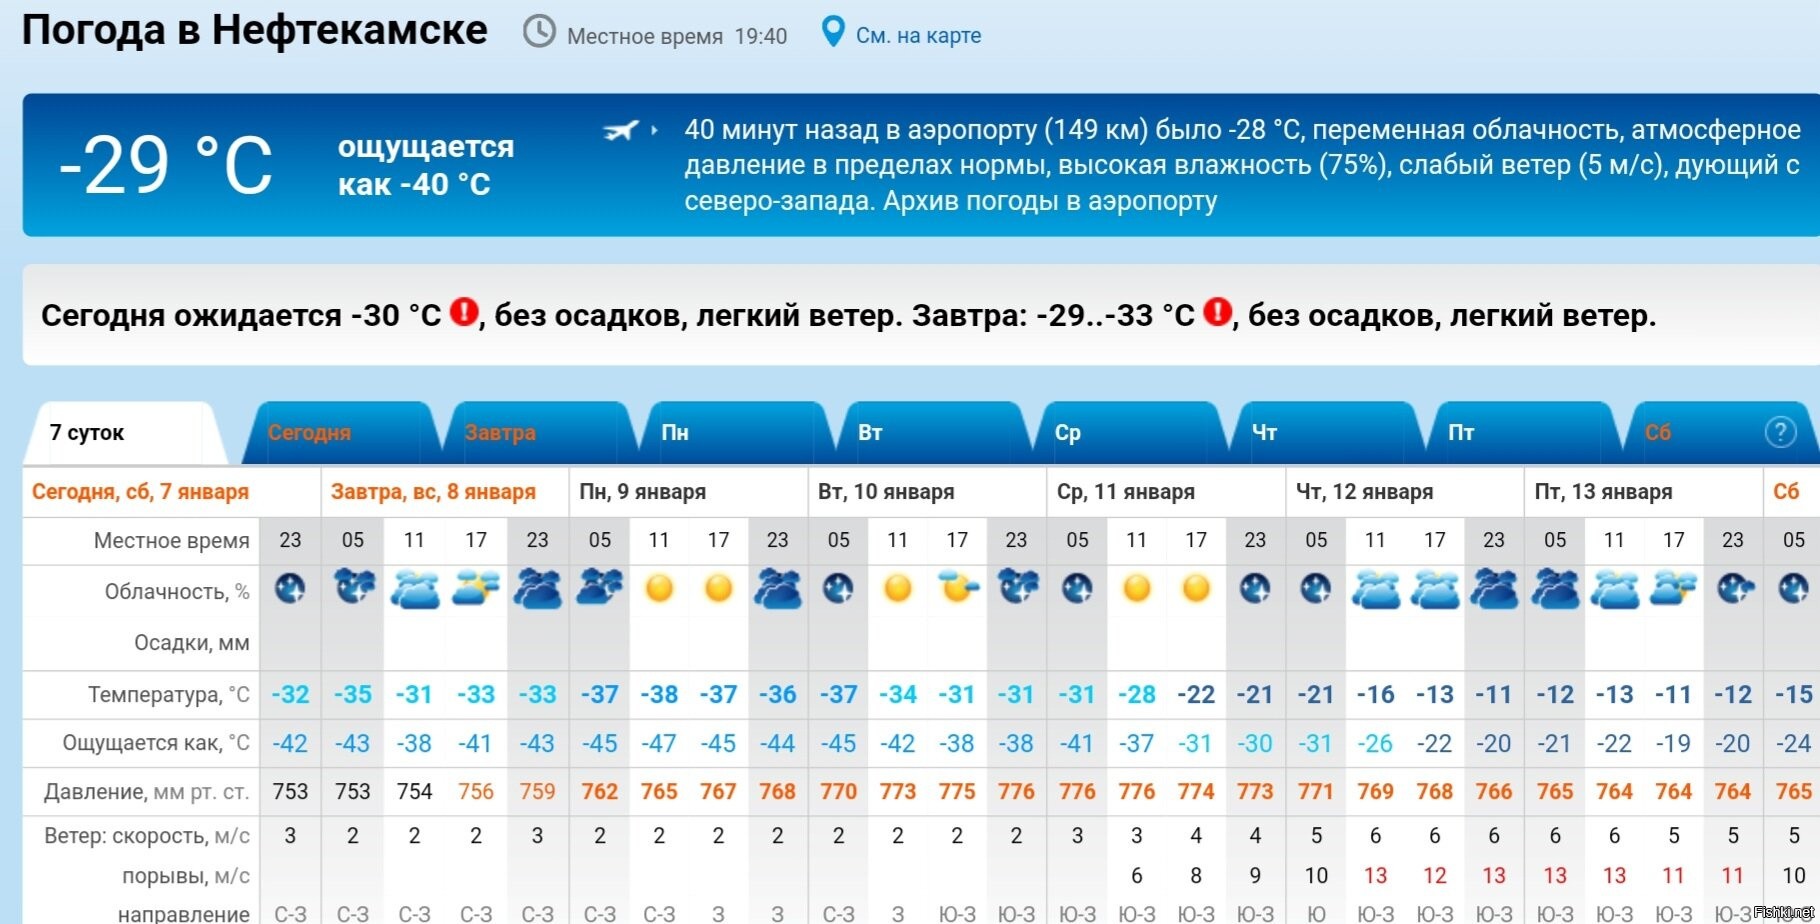 Прогноз погоды рп5 тольятти. Якутия температура. Якутск самая низкая температура. Самая низкая температура в яку. Якутск температура.